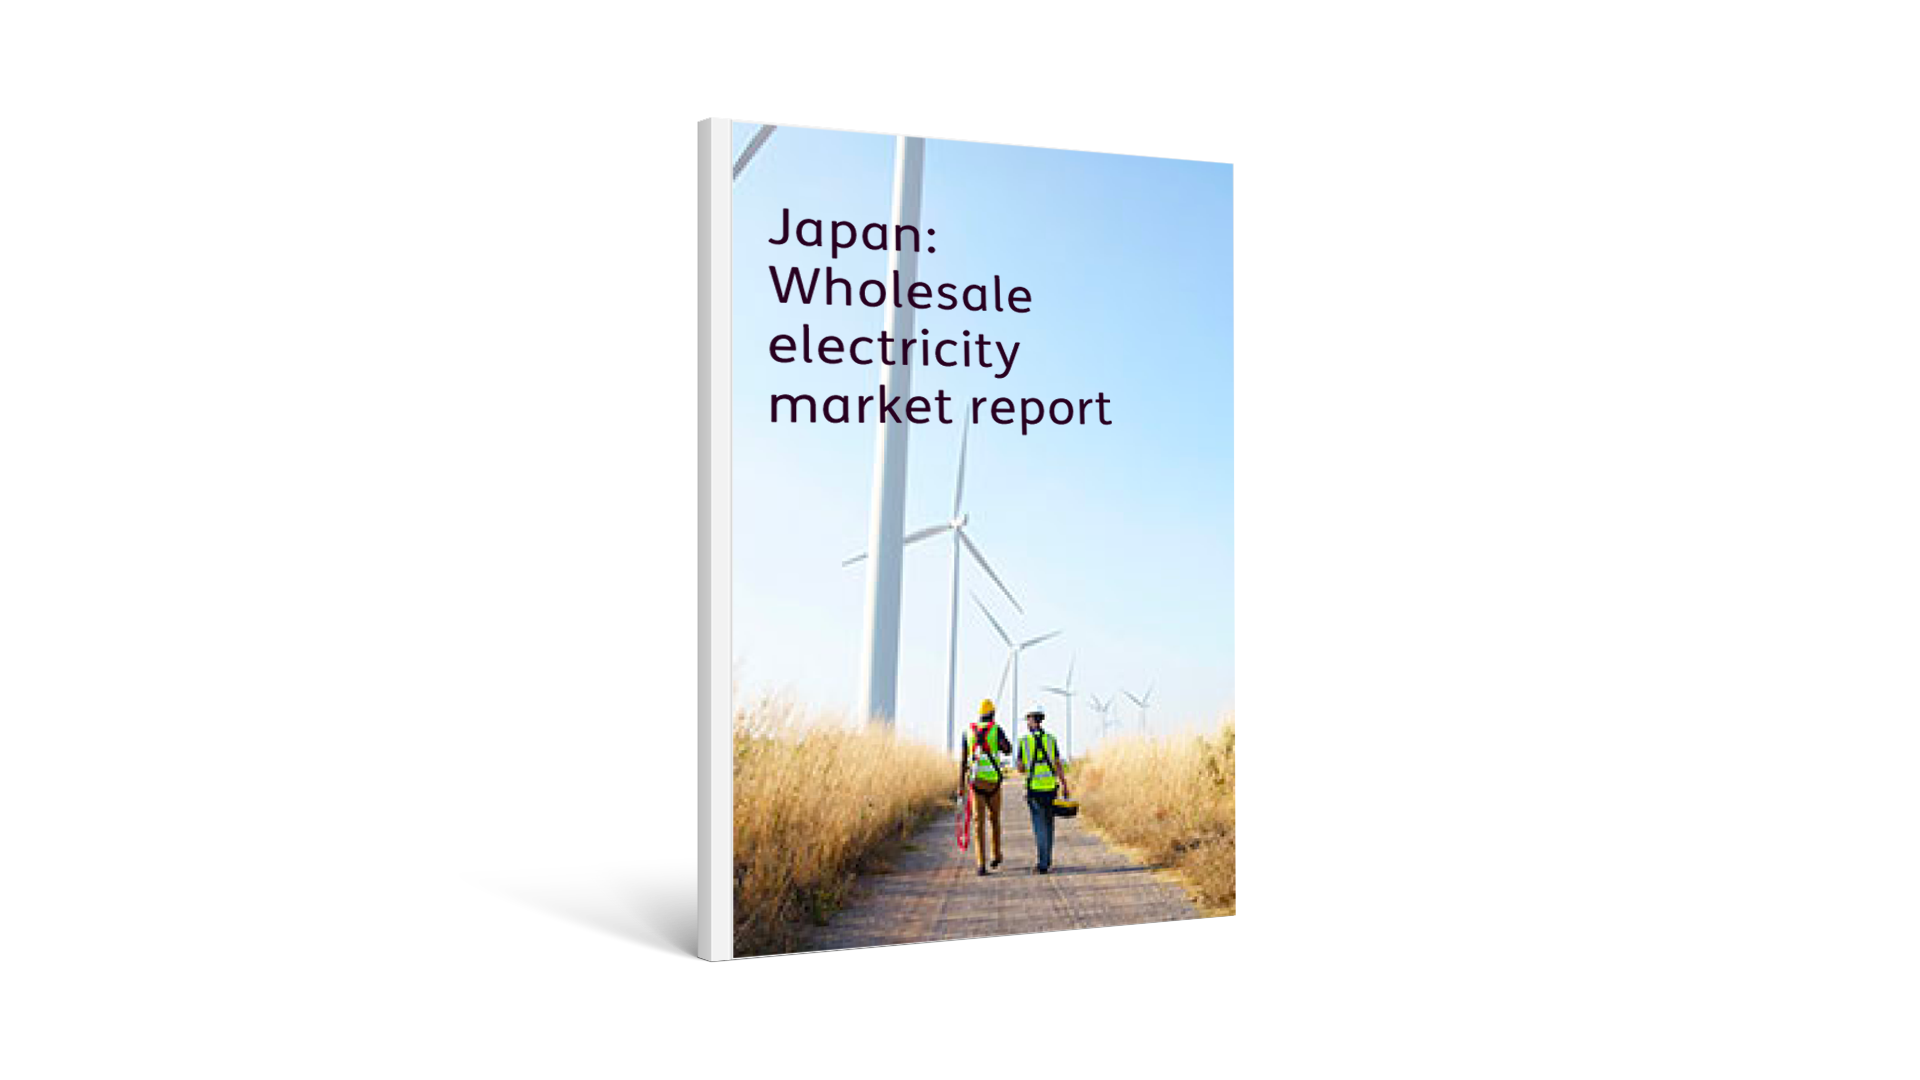 Japan: Wholesale electricity market report